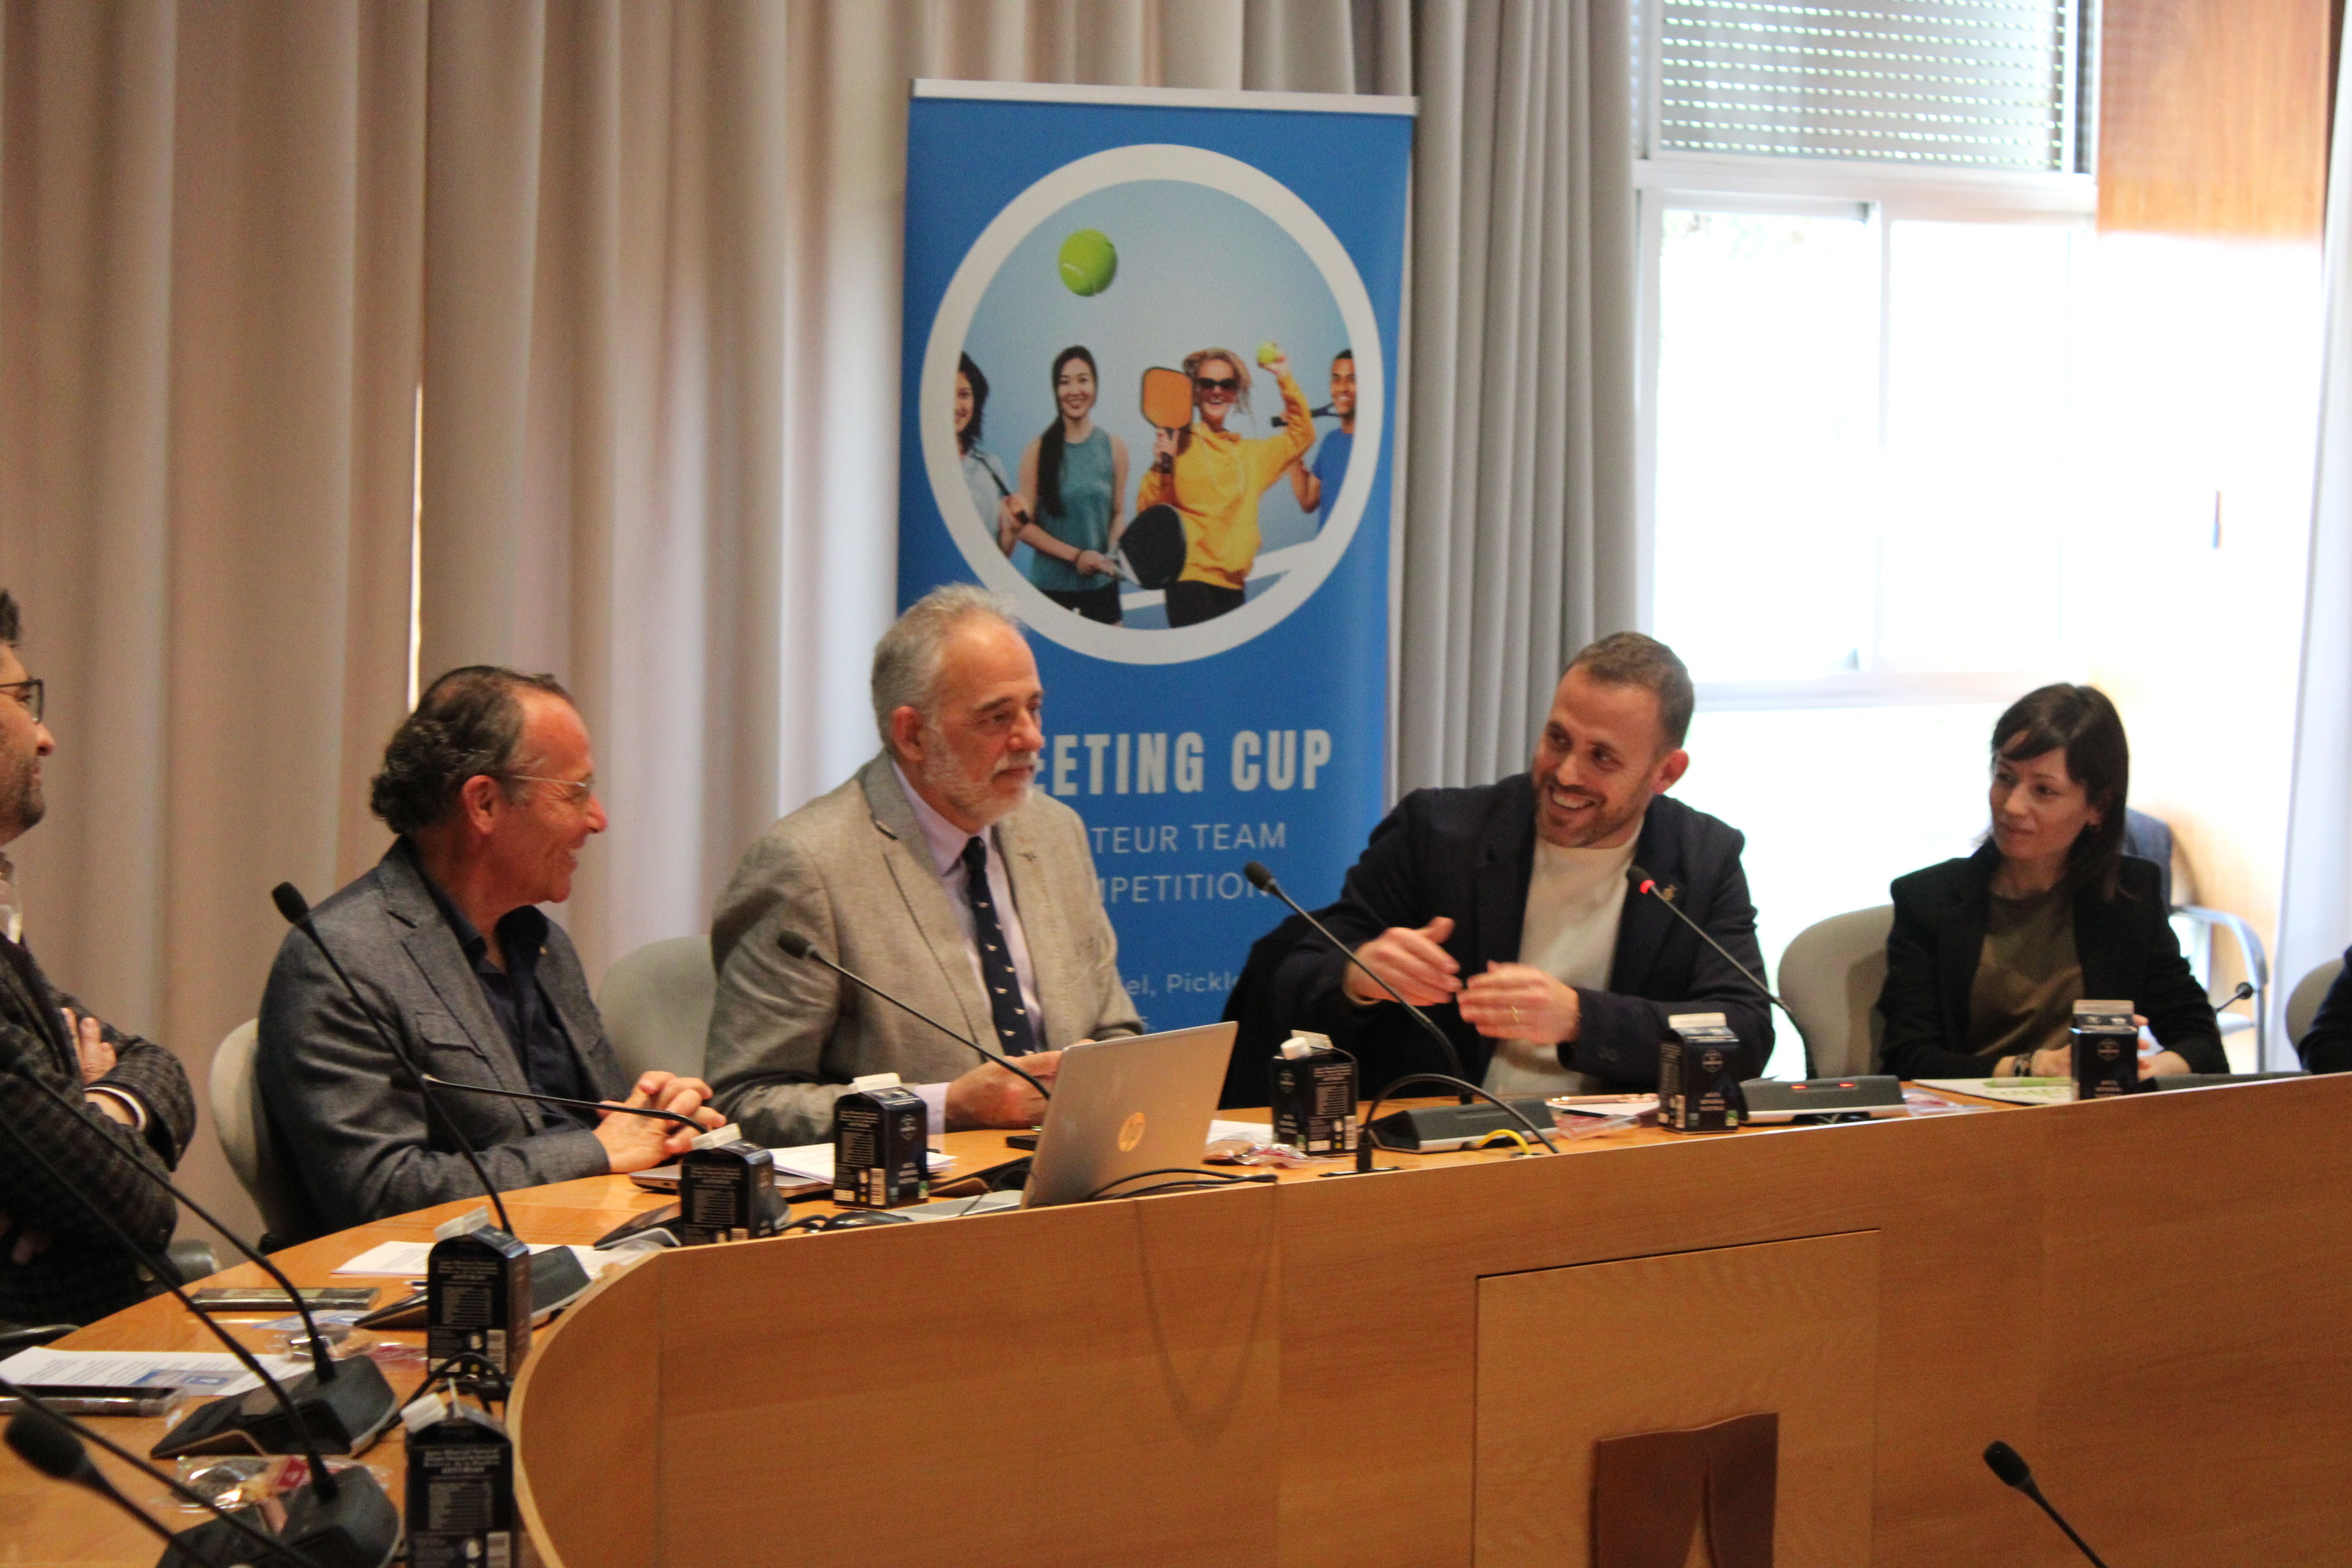 Acte de presentació de la Meeting Cup. FOTO: Guillem Barrera